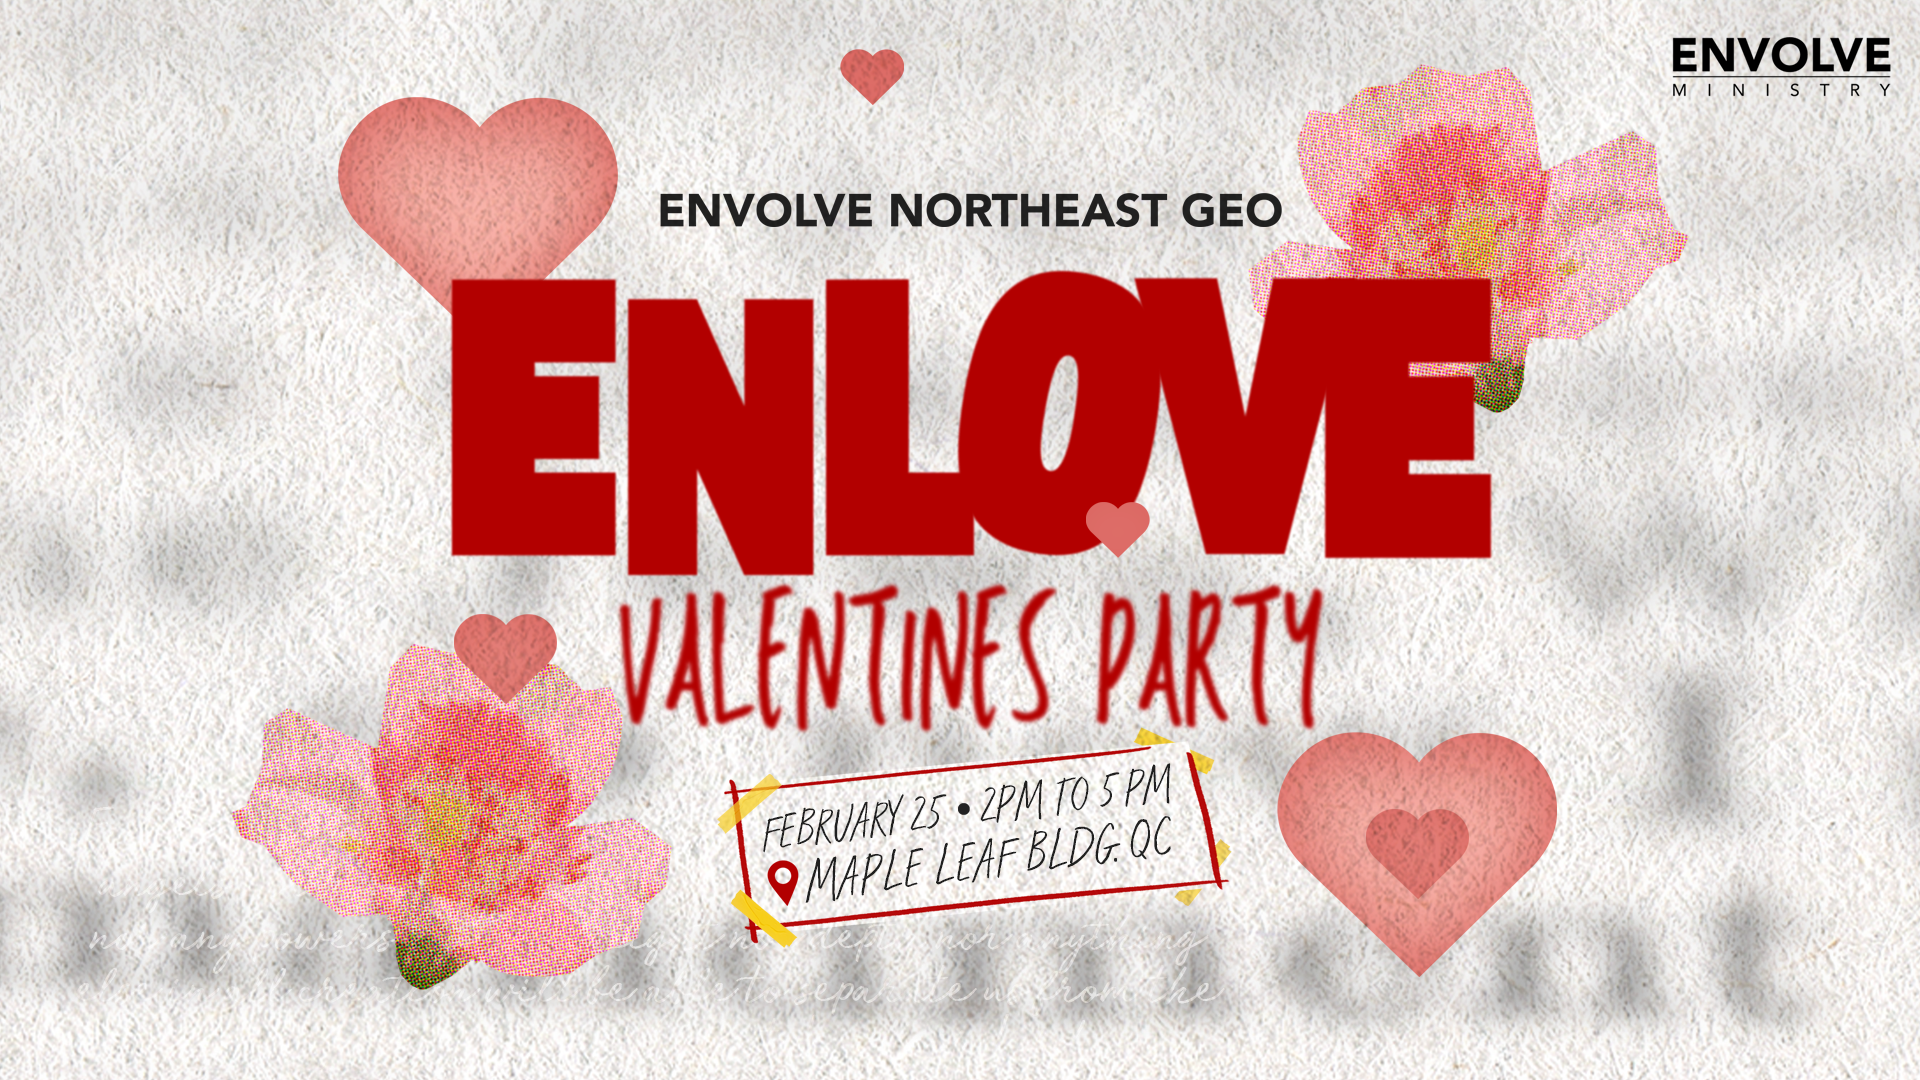 Enlove: Celebrating God's Love the NE Way